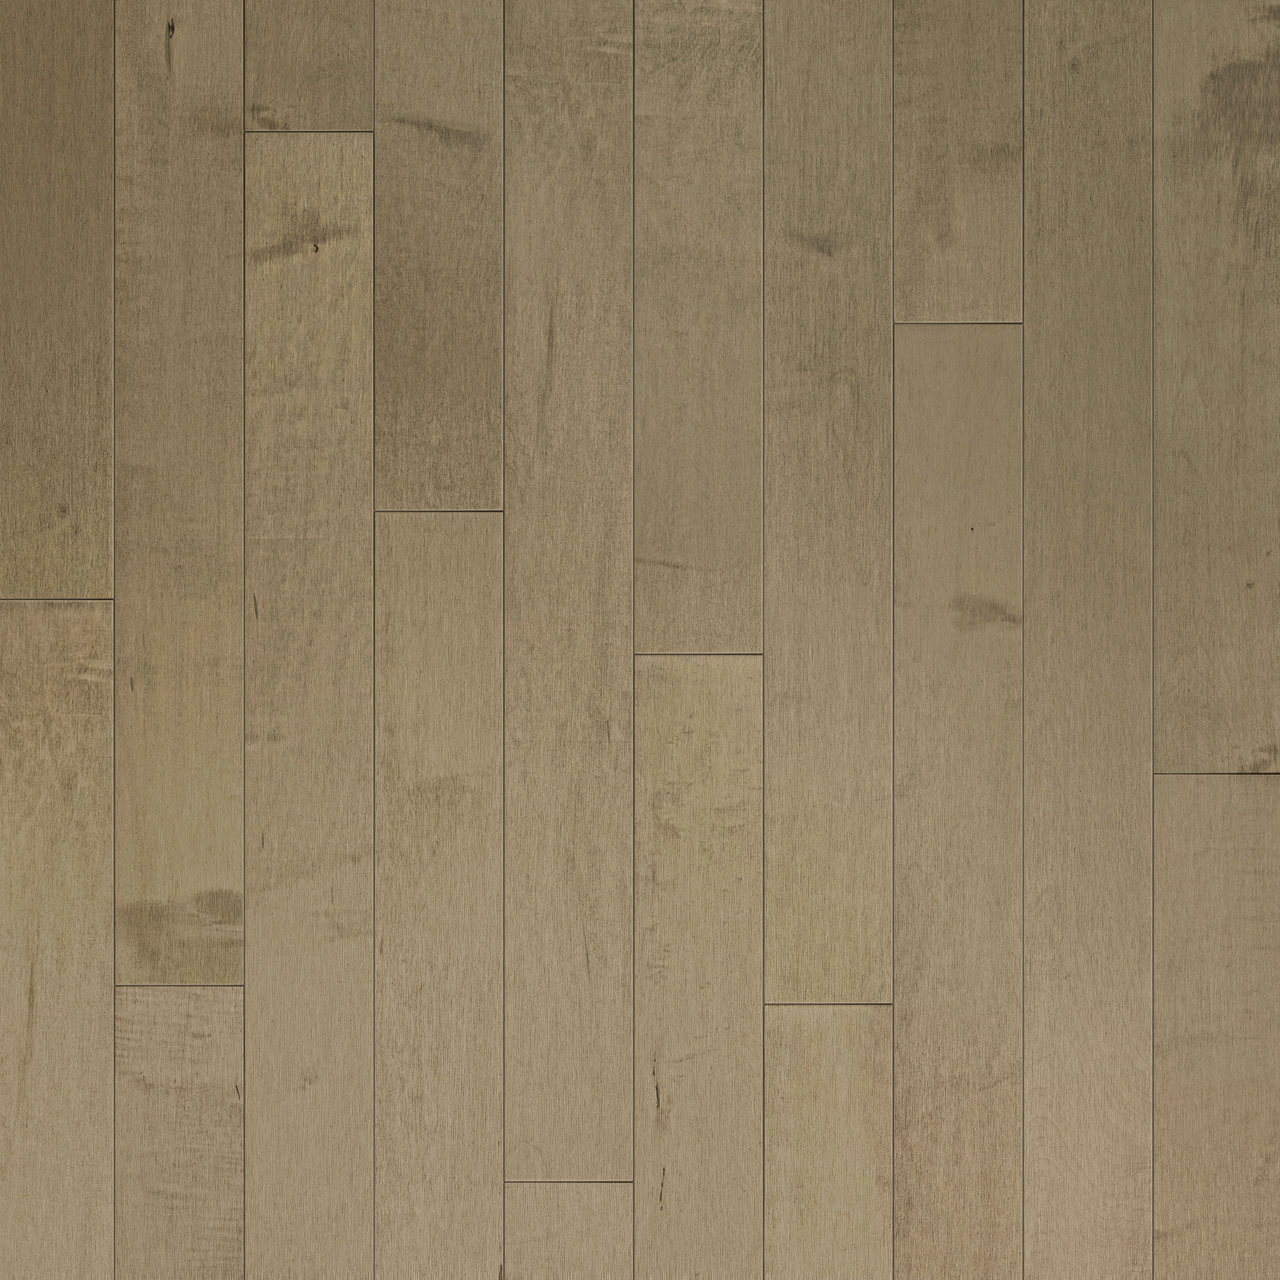 Preverco Hard Maple Distinction Latte, Preverco Engineered Hardwood Flooring Reviews